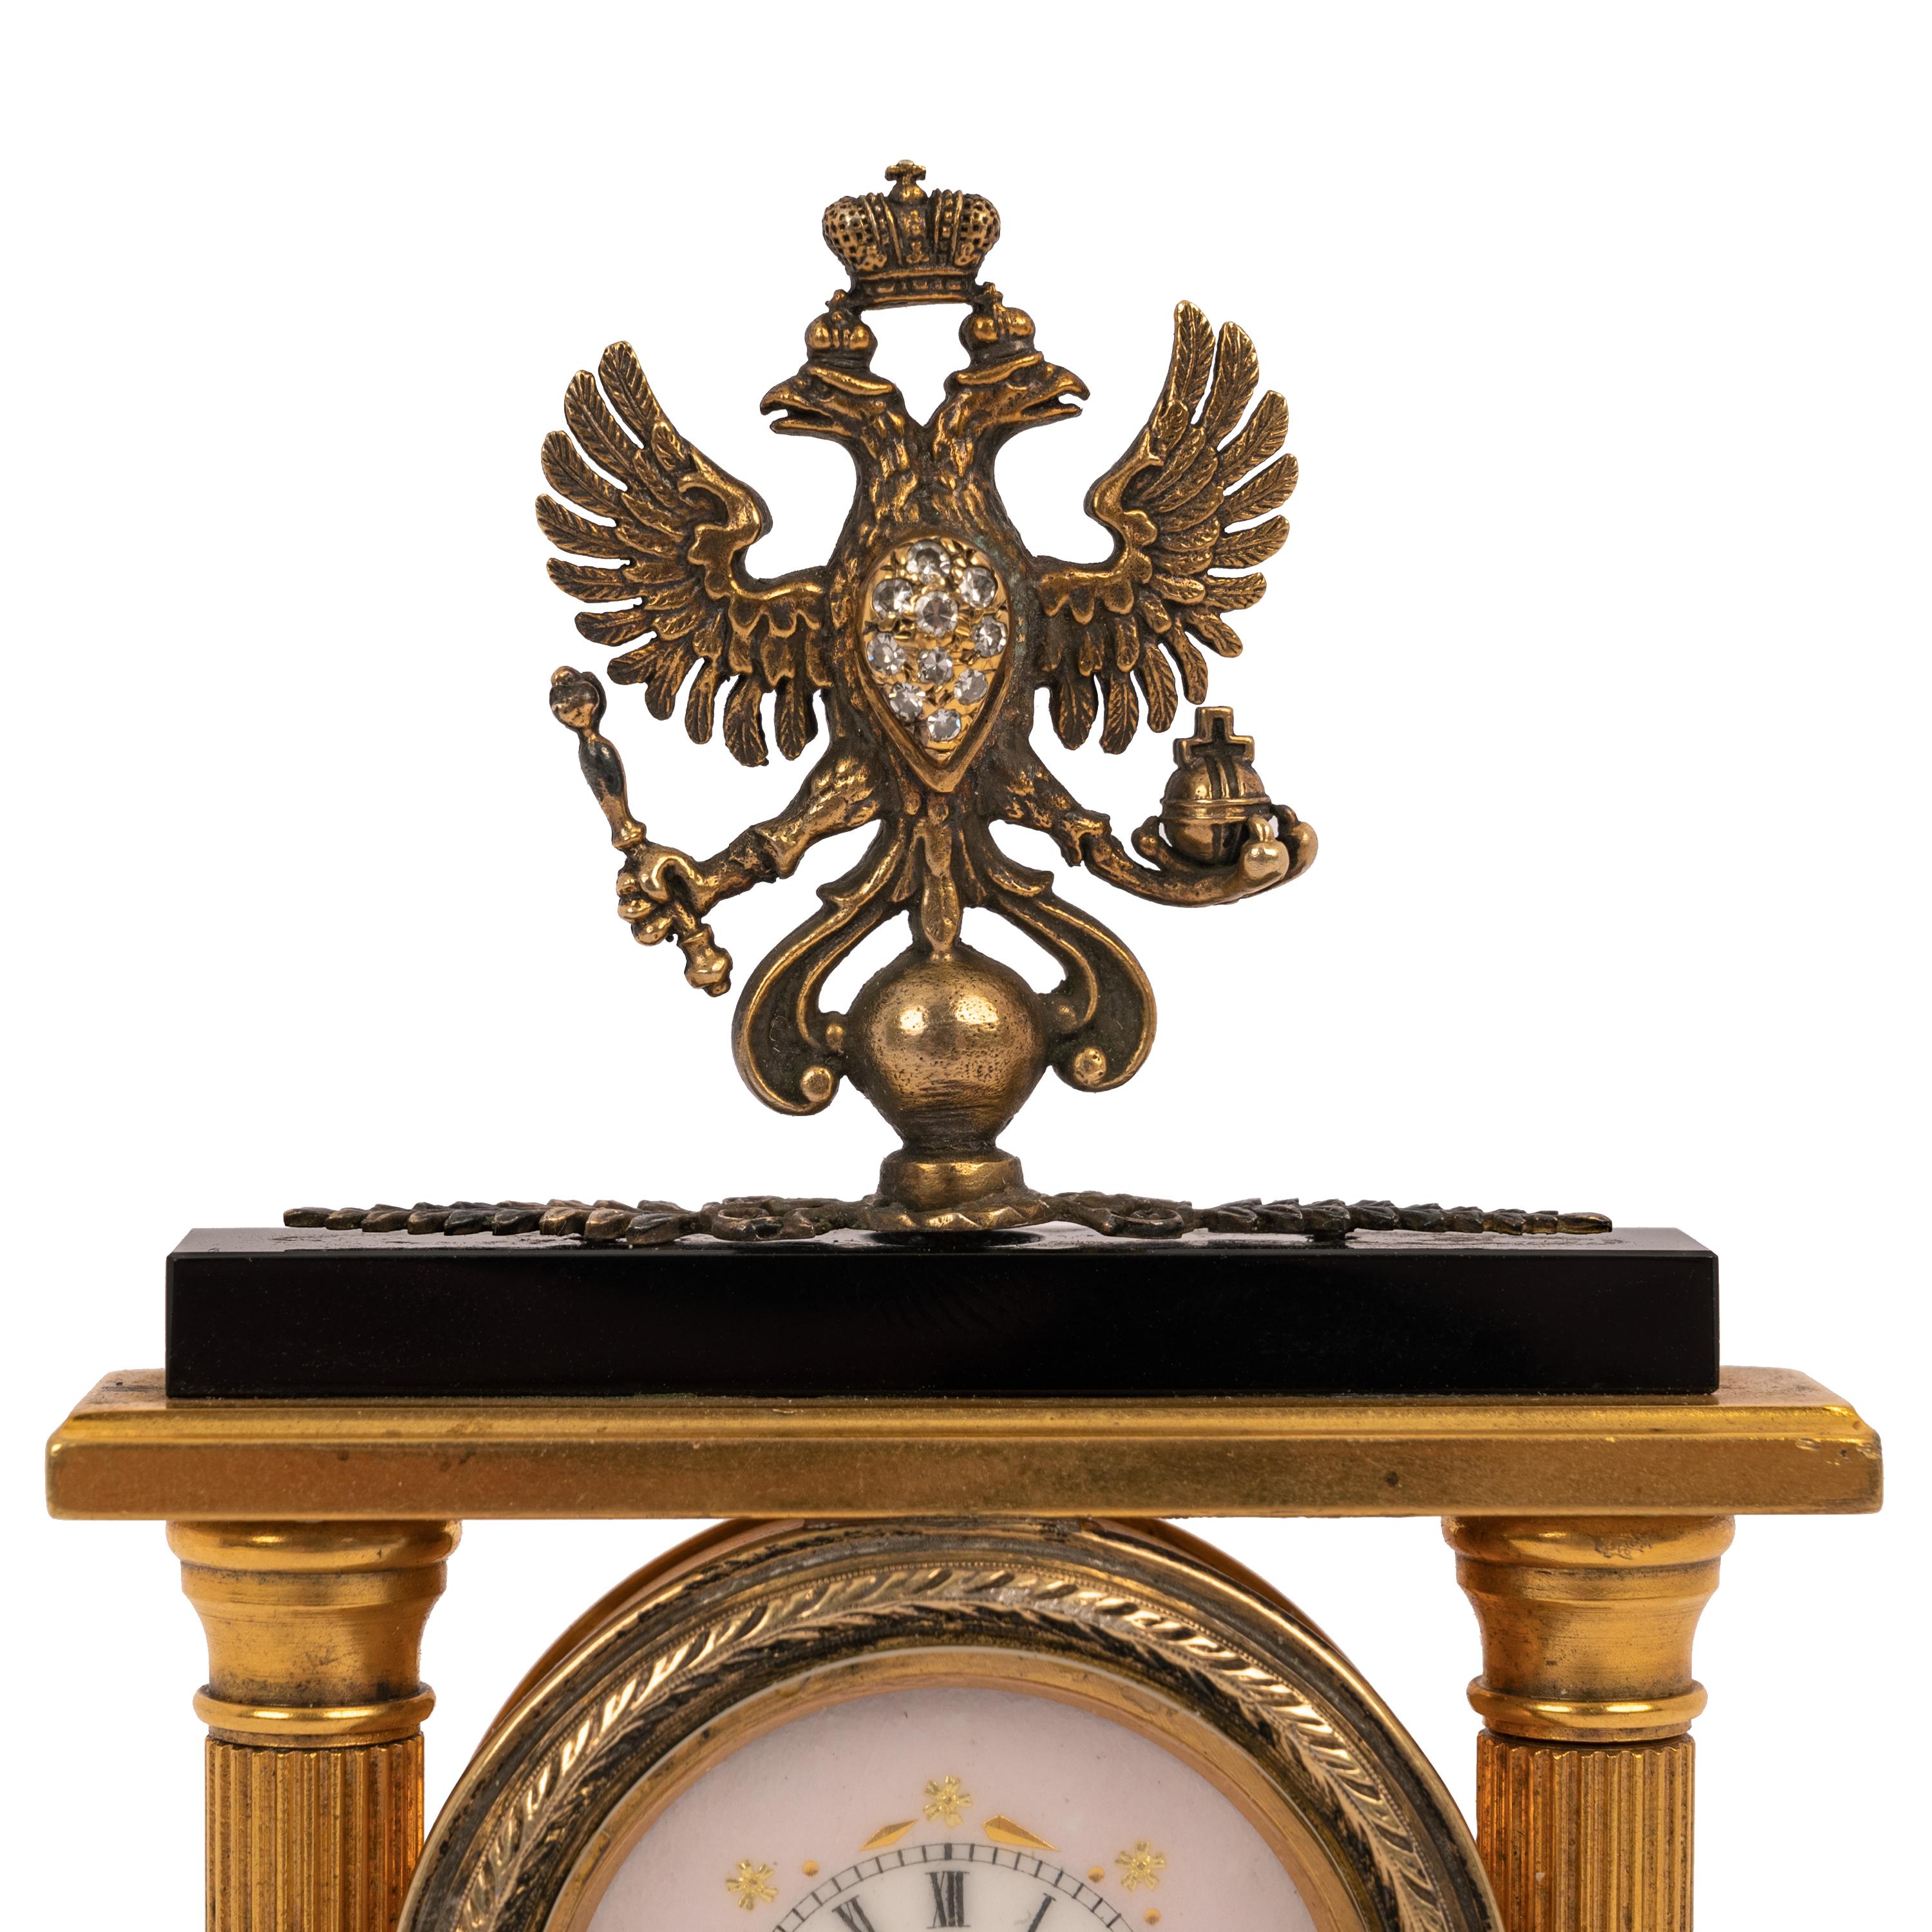 Wichtige antike russische kaiserliche Faberge Silber vergoldet Chalzedon (schwarzer Onyx) Diamant Miniatur Schreibtischuhr, von Meister Feodor Afanassiev (1870-1927), die Uhr um 1900.
1883 zog Afanasiev nach St. Petersburg und wurde in der Werkstatt